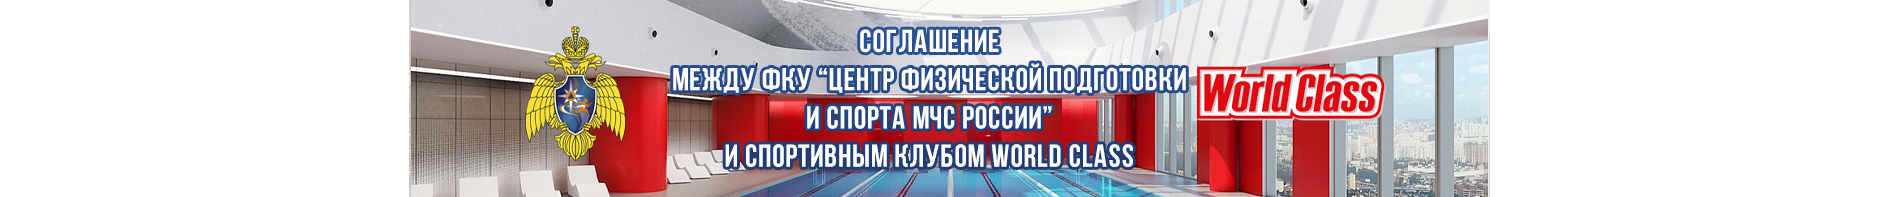 Соглашение между ФКУ "Центр физической подготовки и спорта МЧС России" и спортивным клубом WorldClass